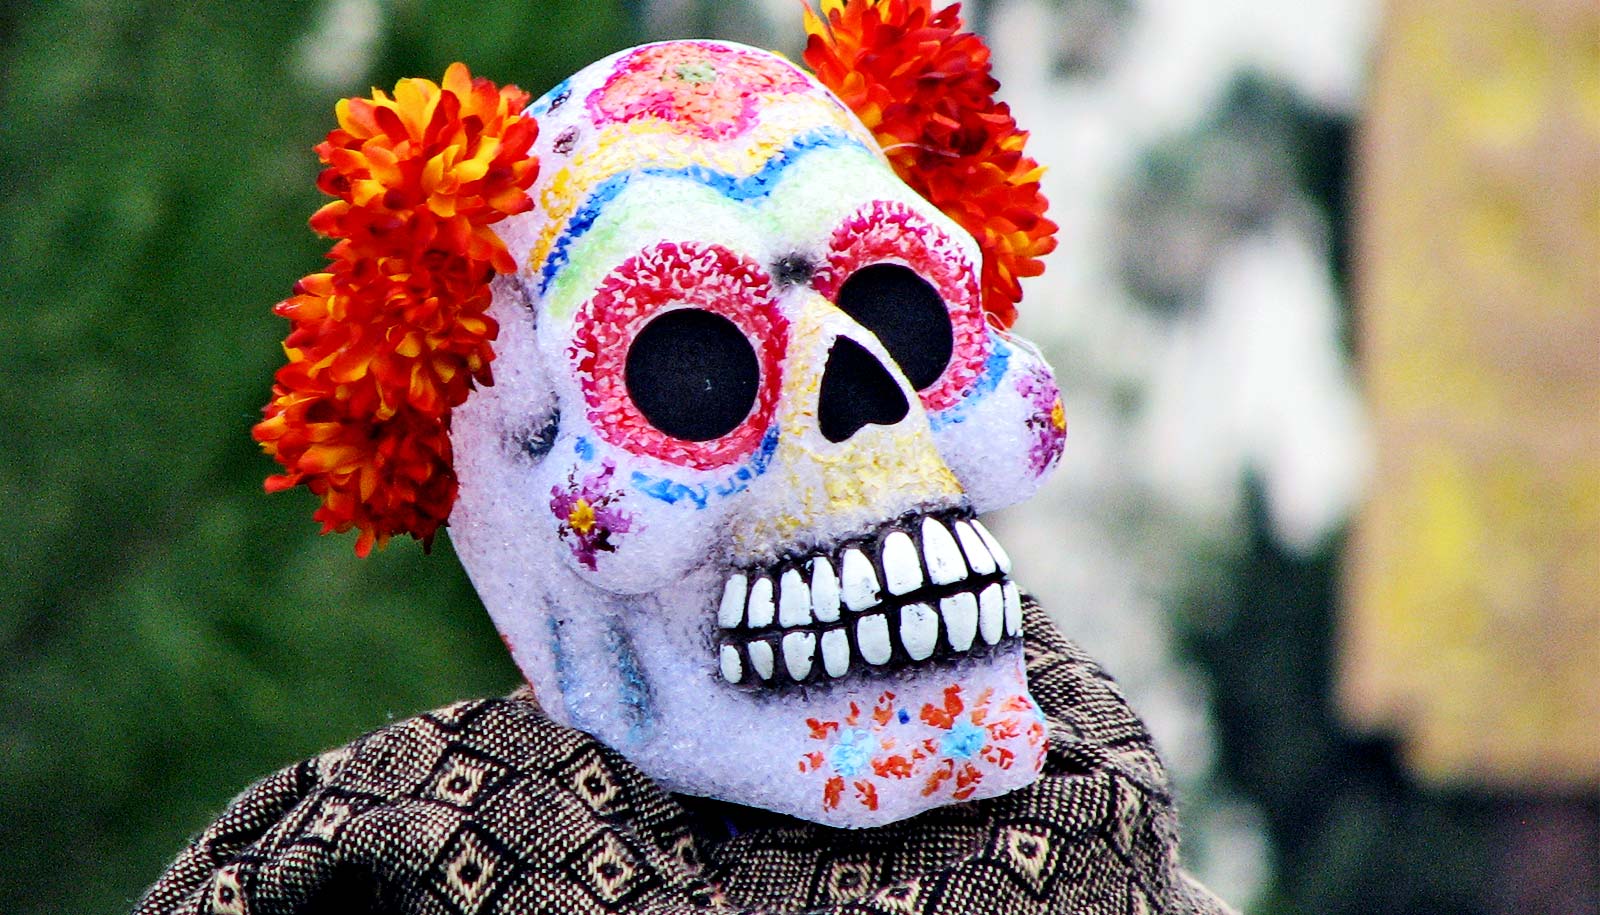 What's the history behind Dia de los Muertos? - Futurity